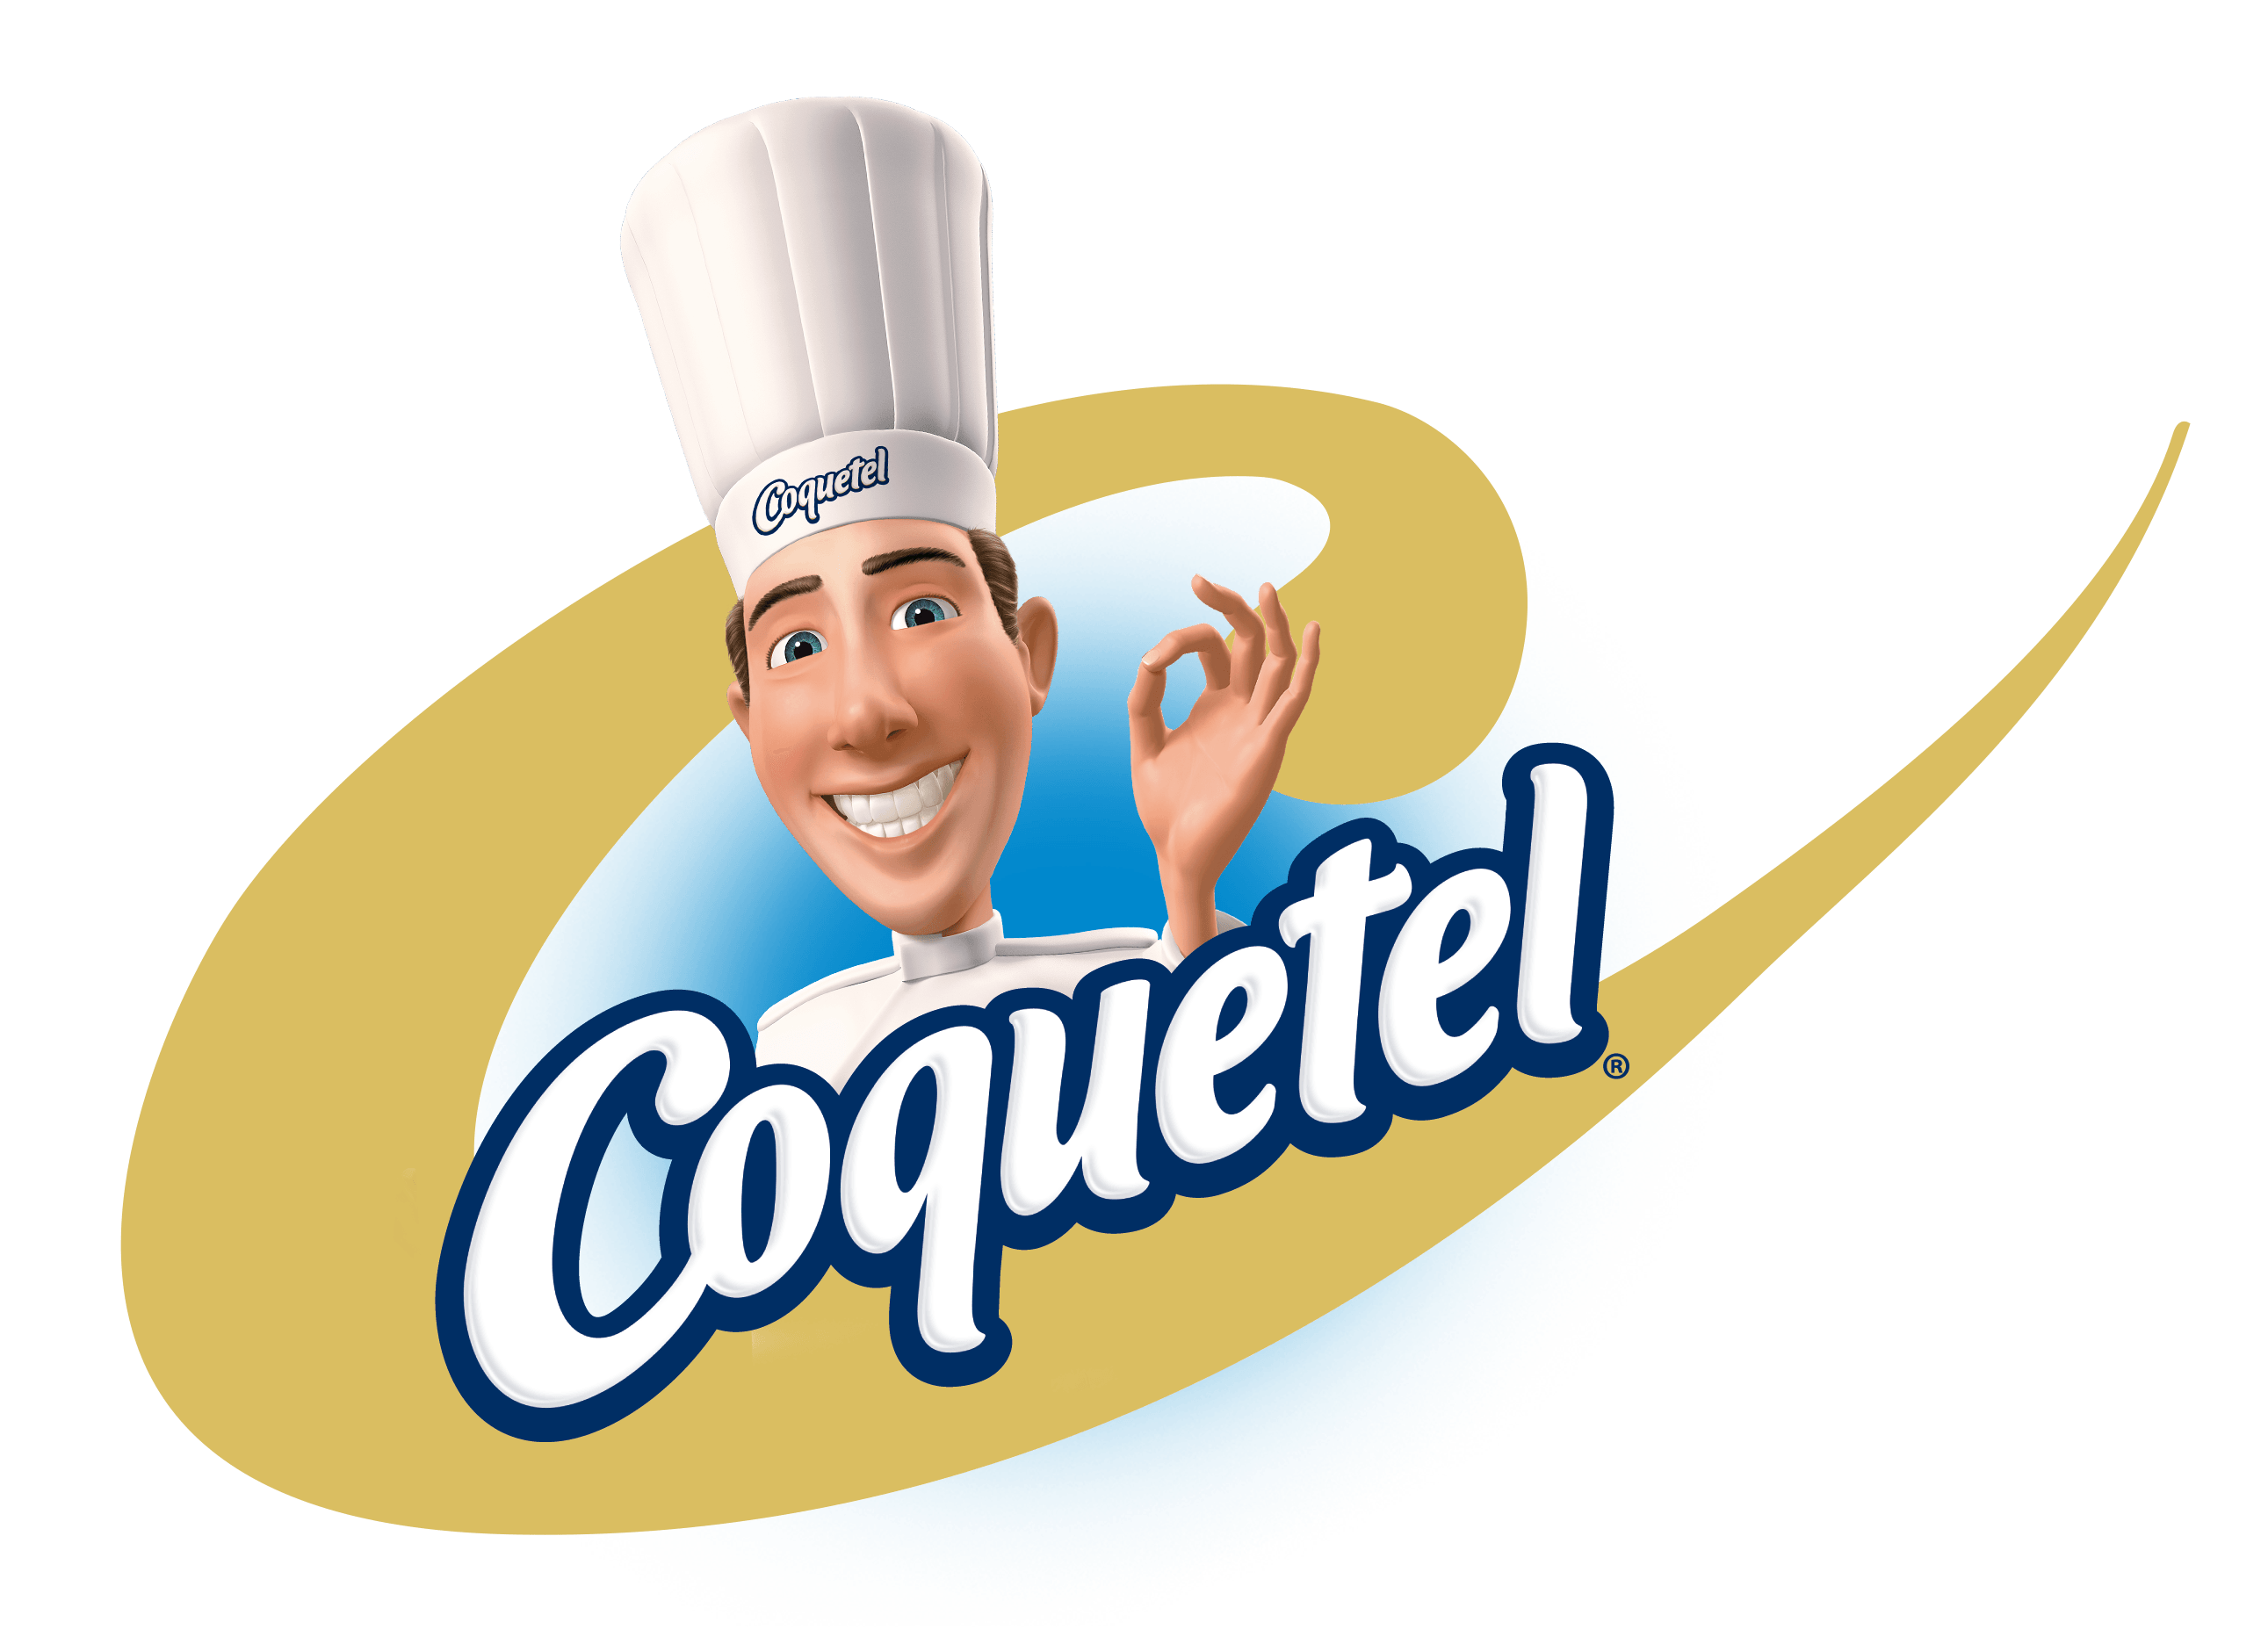 Coquetel